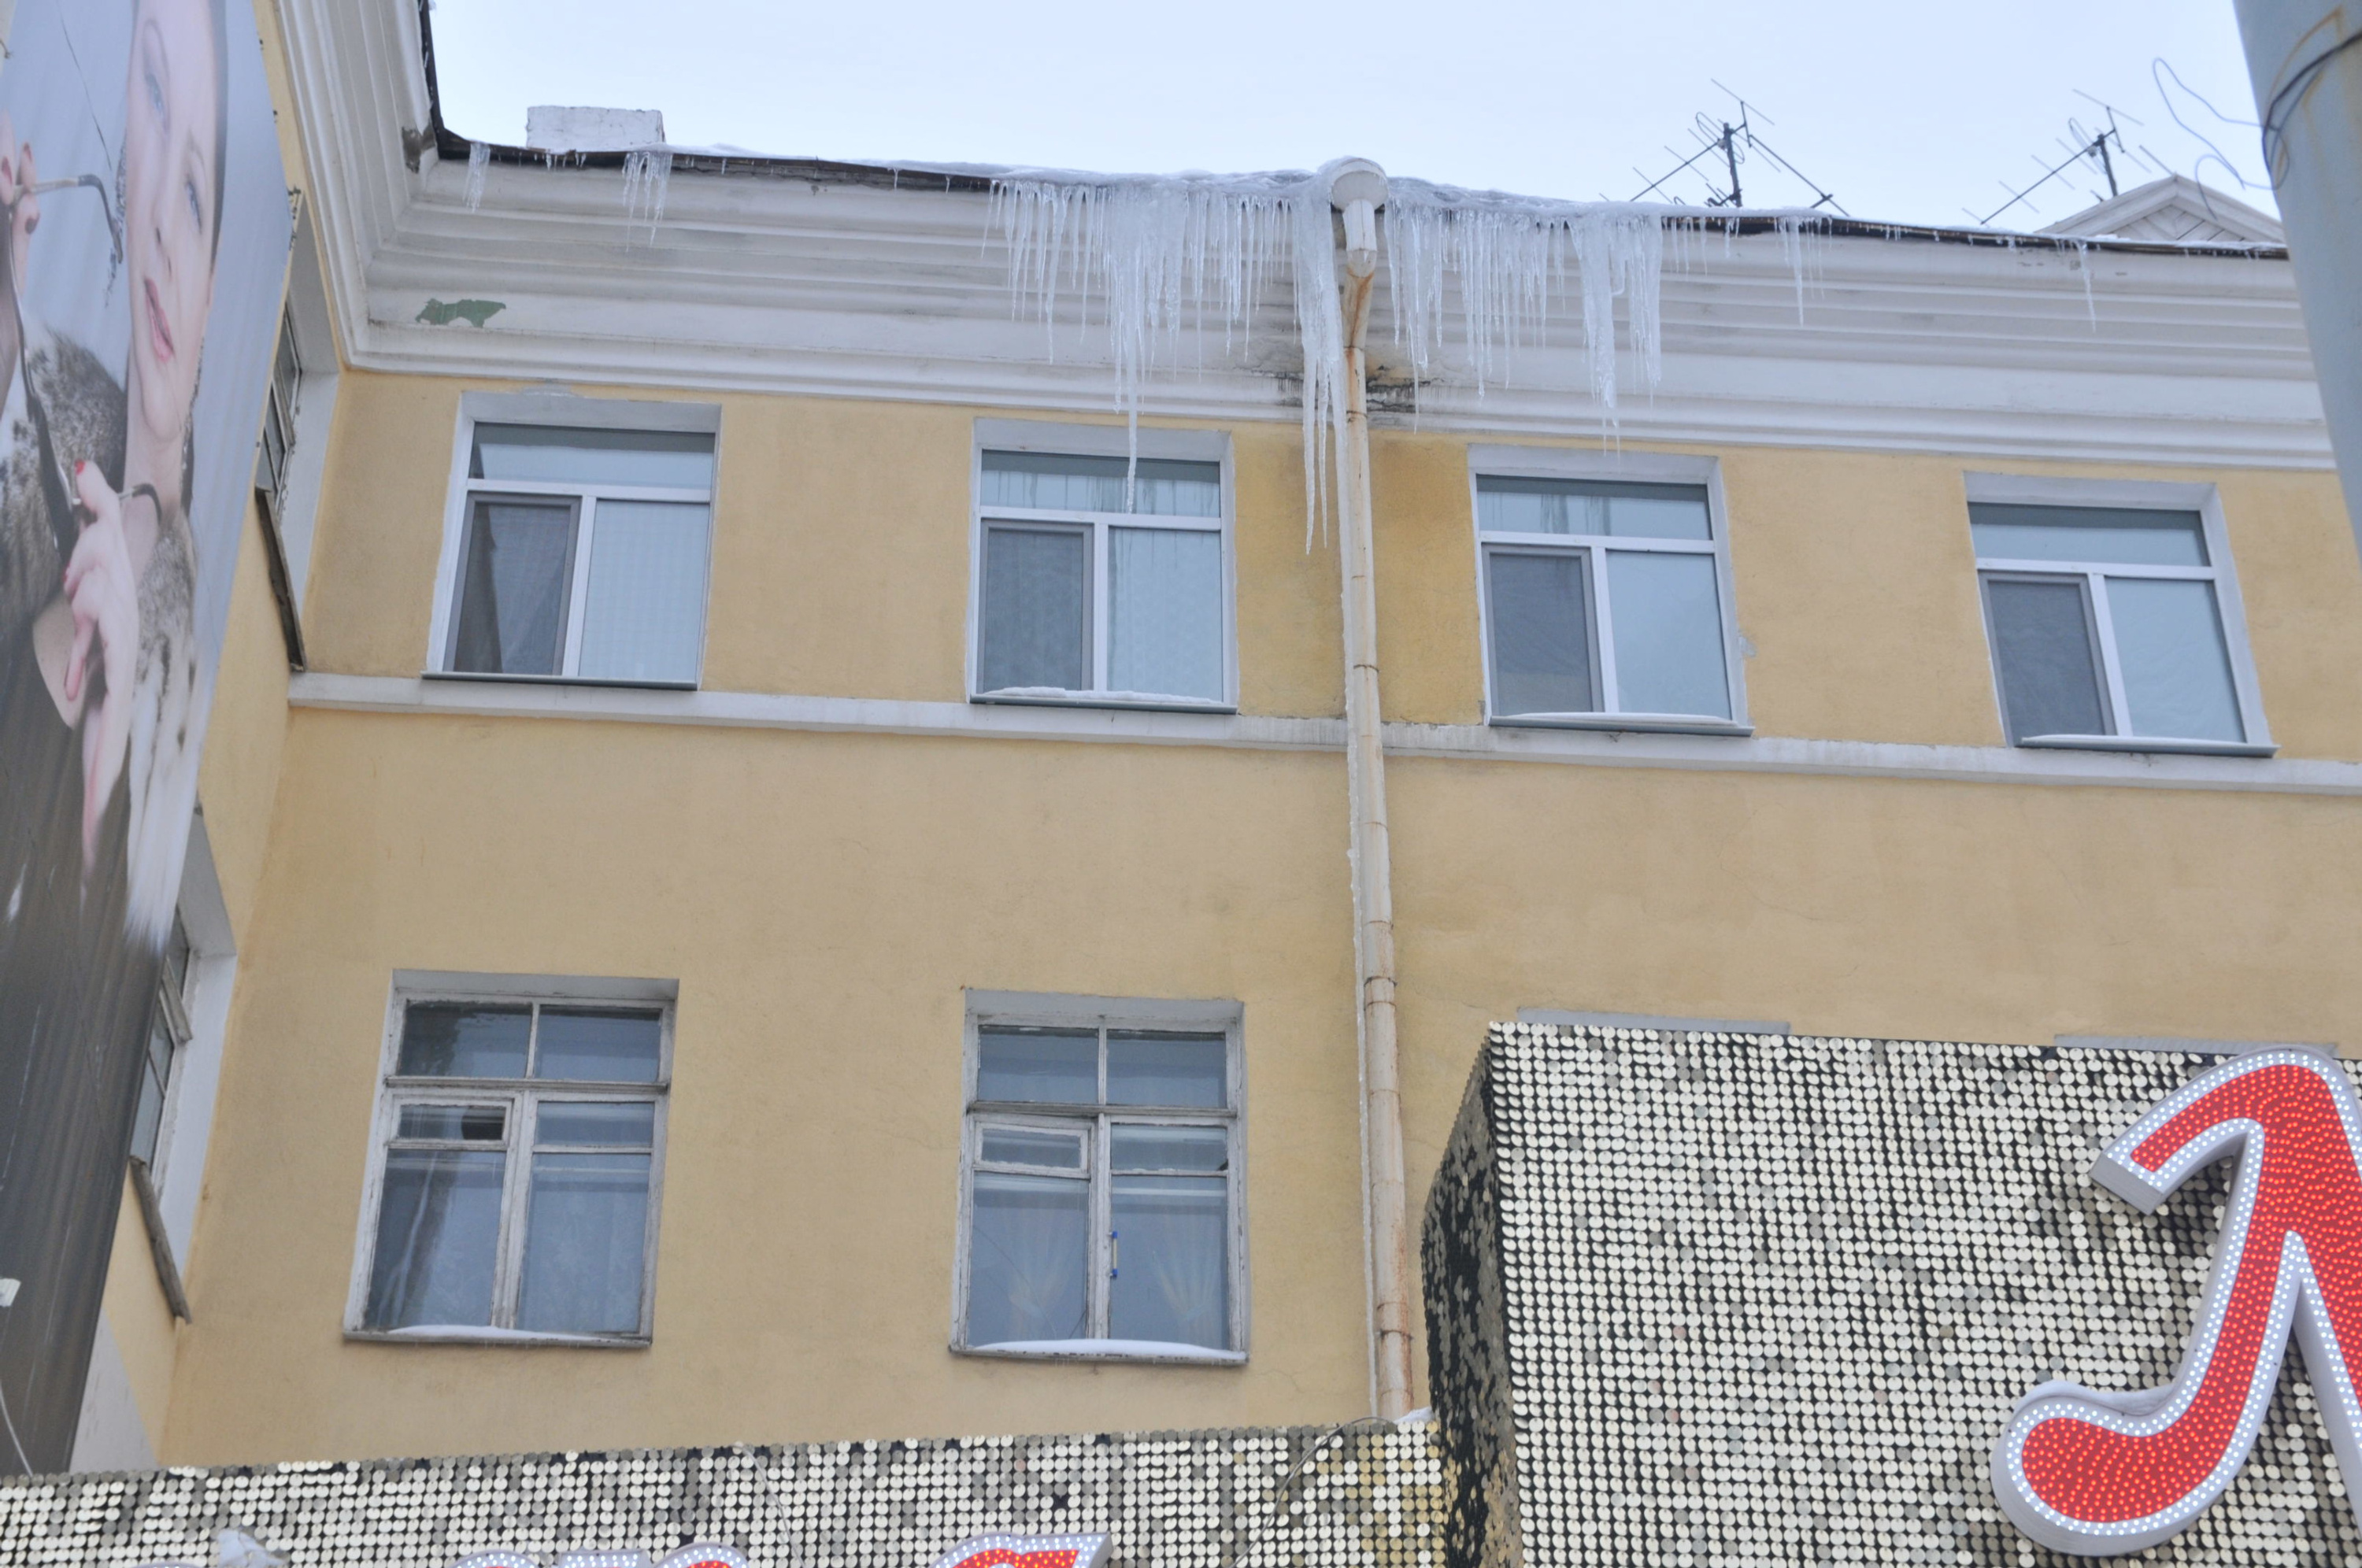 Дома, которые признаны аварийными до 2017 года, в Екатеринбурге уже снесли